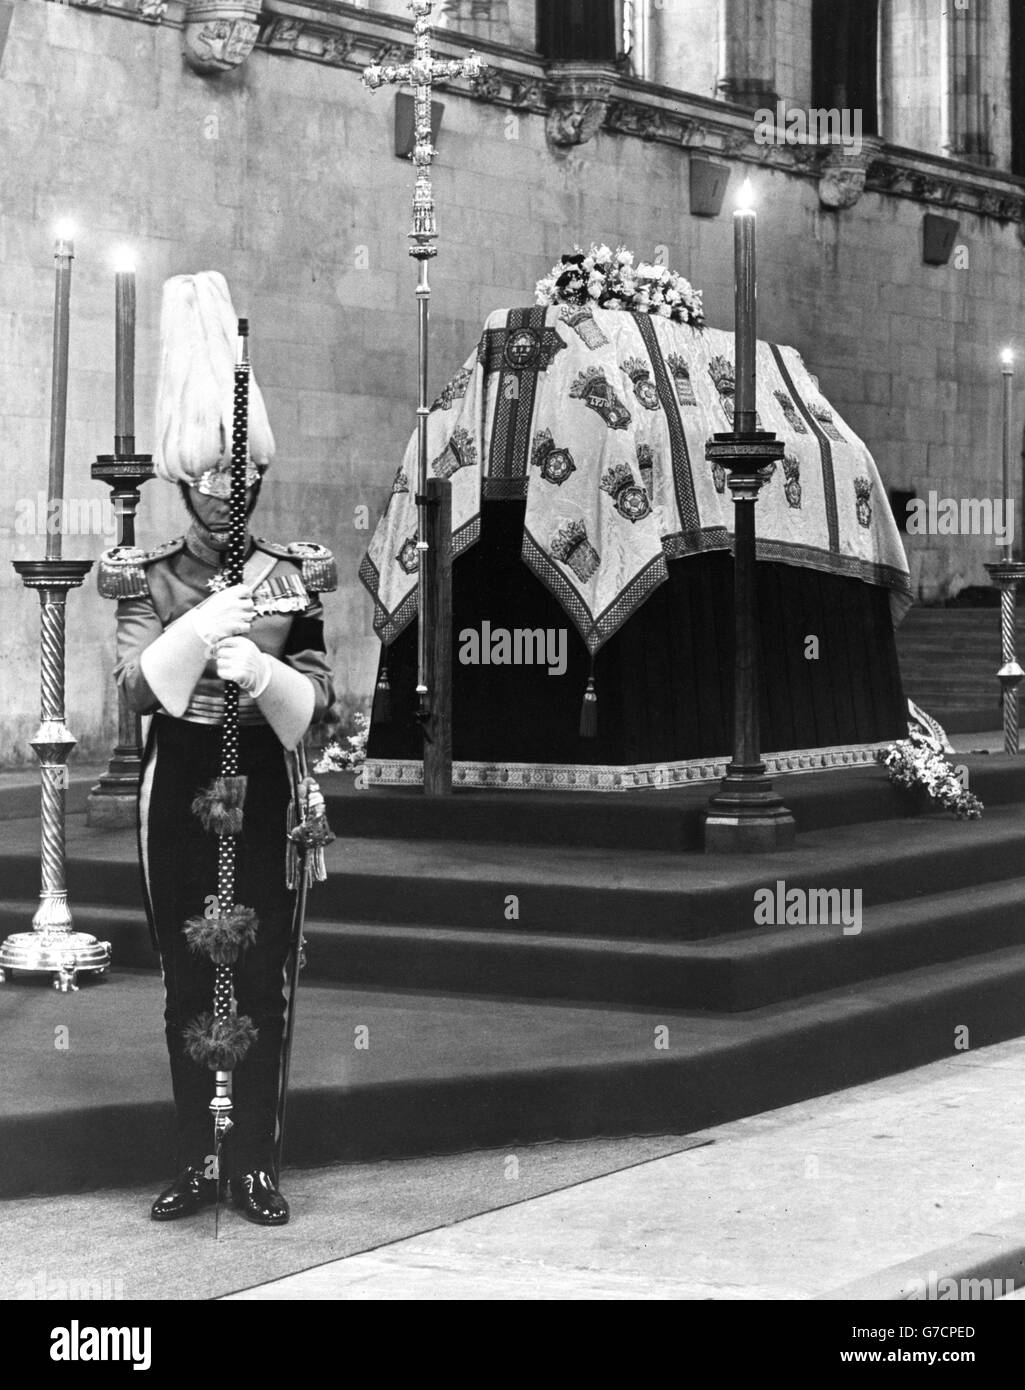 Der Sarg von Queen Mary ruht auf der Katafalque im Liegenstaat in der Westminster Hall, London. Die Leiche der verstorbenen Königin wurde heute in einer feierlichen Prozession vom Marlborough House zur Westminster Hall für den im Staat liegenden Staat getragen. Stockfoto